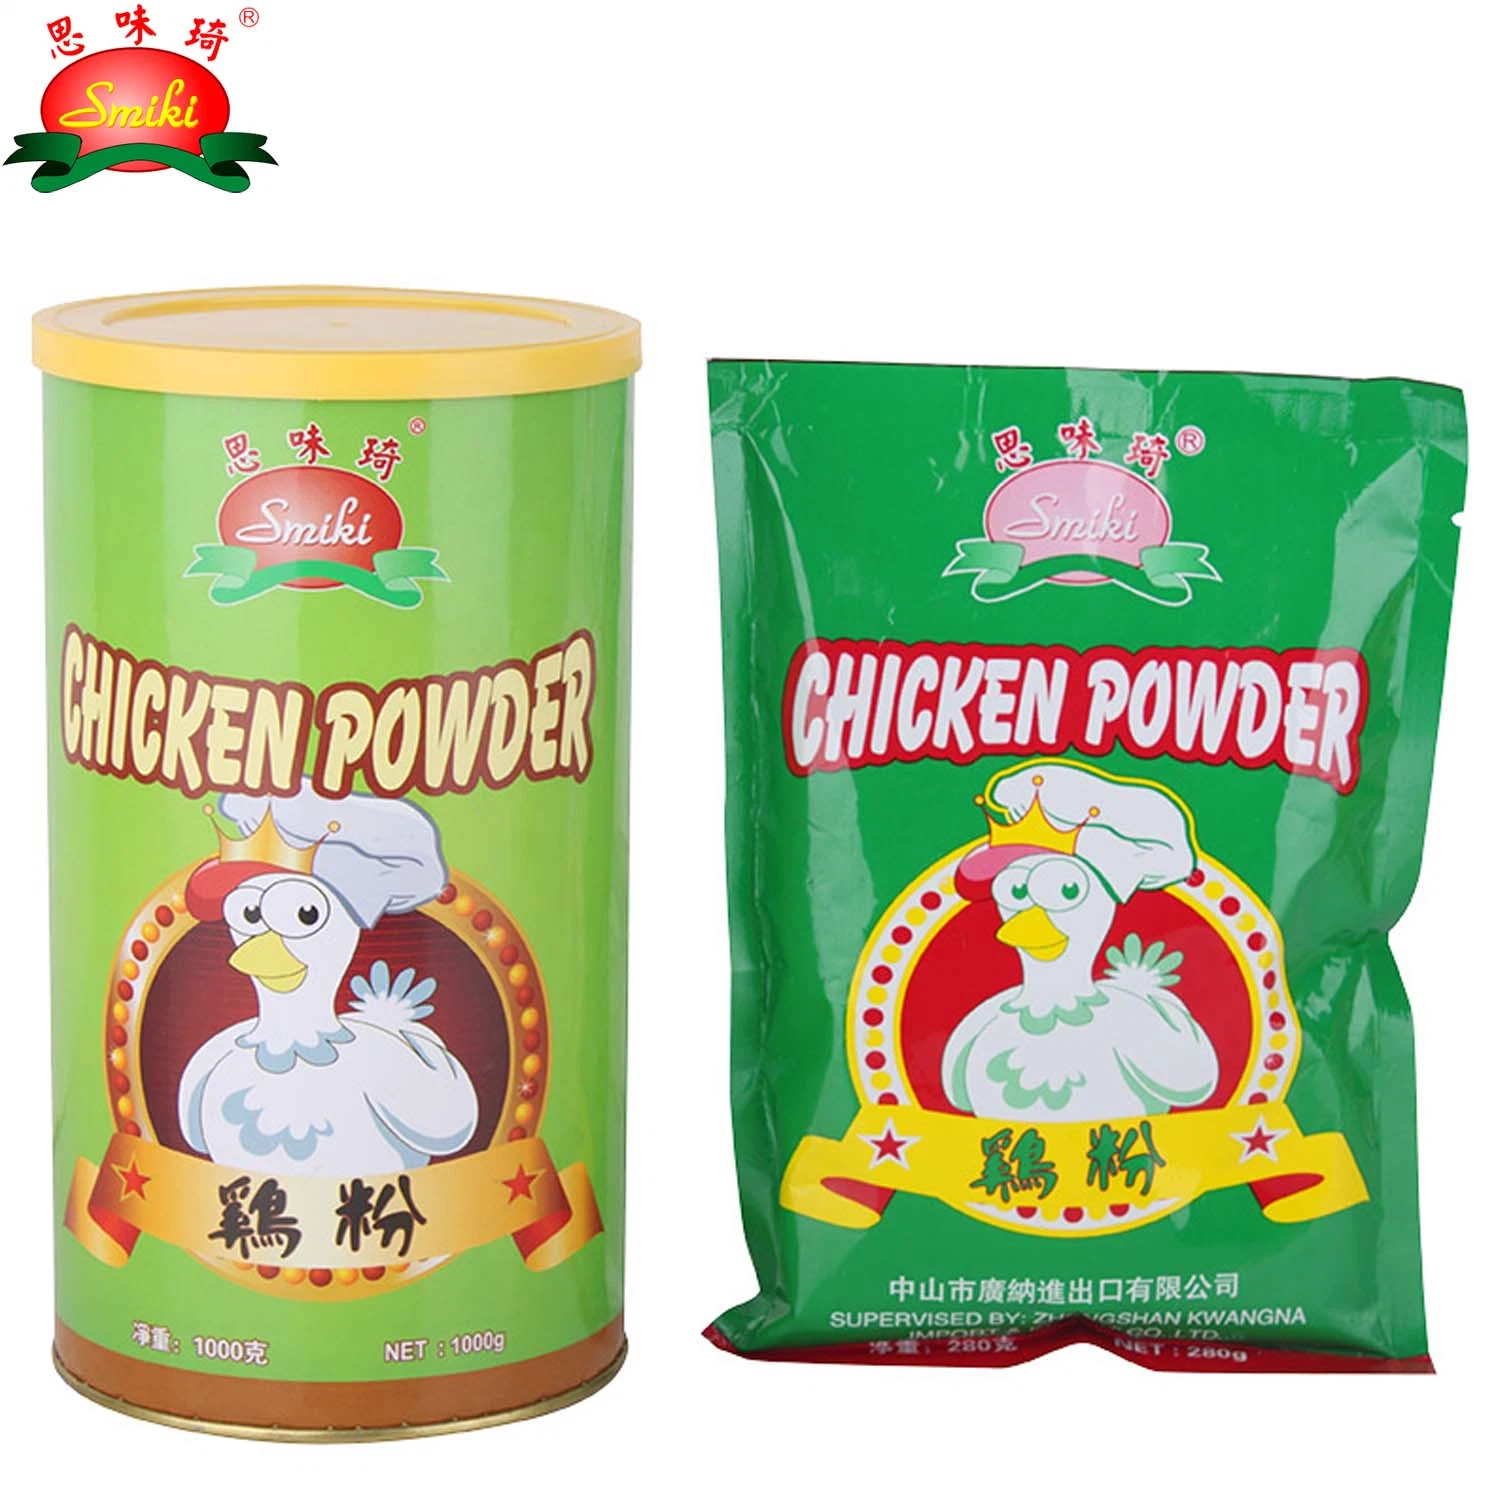 Chicken Powder with Vegetable Flavor